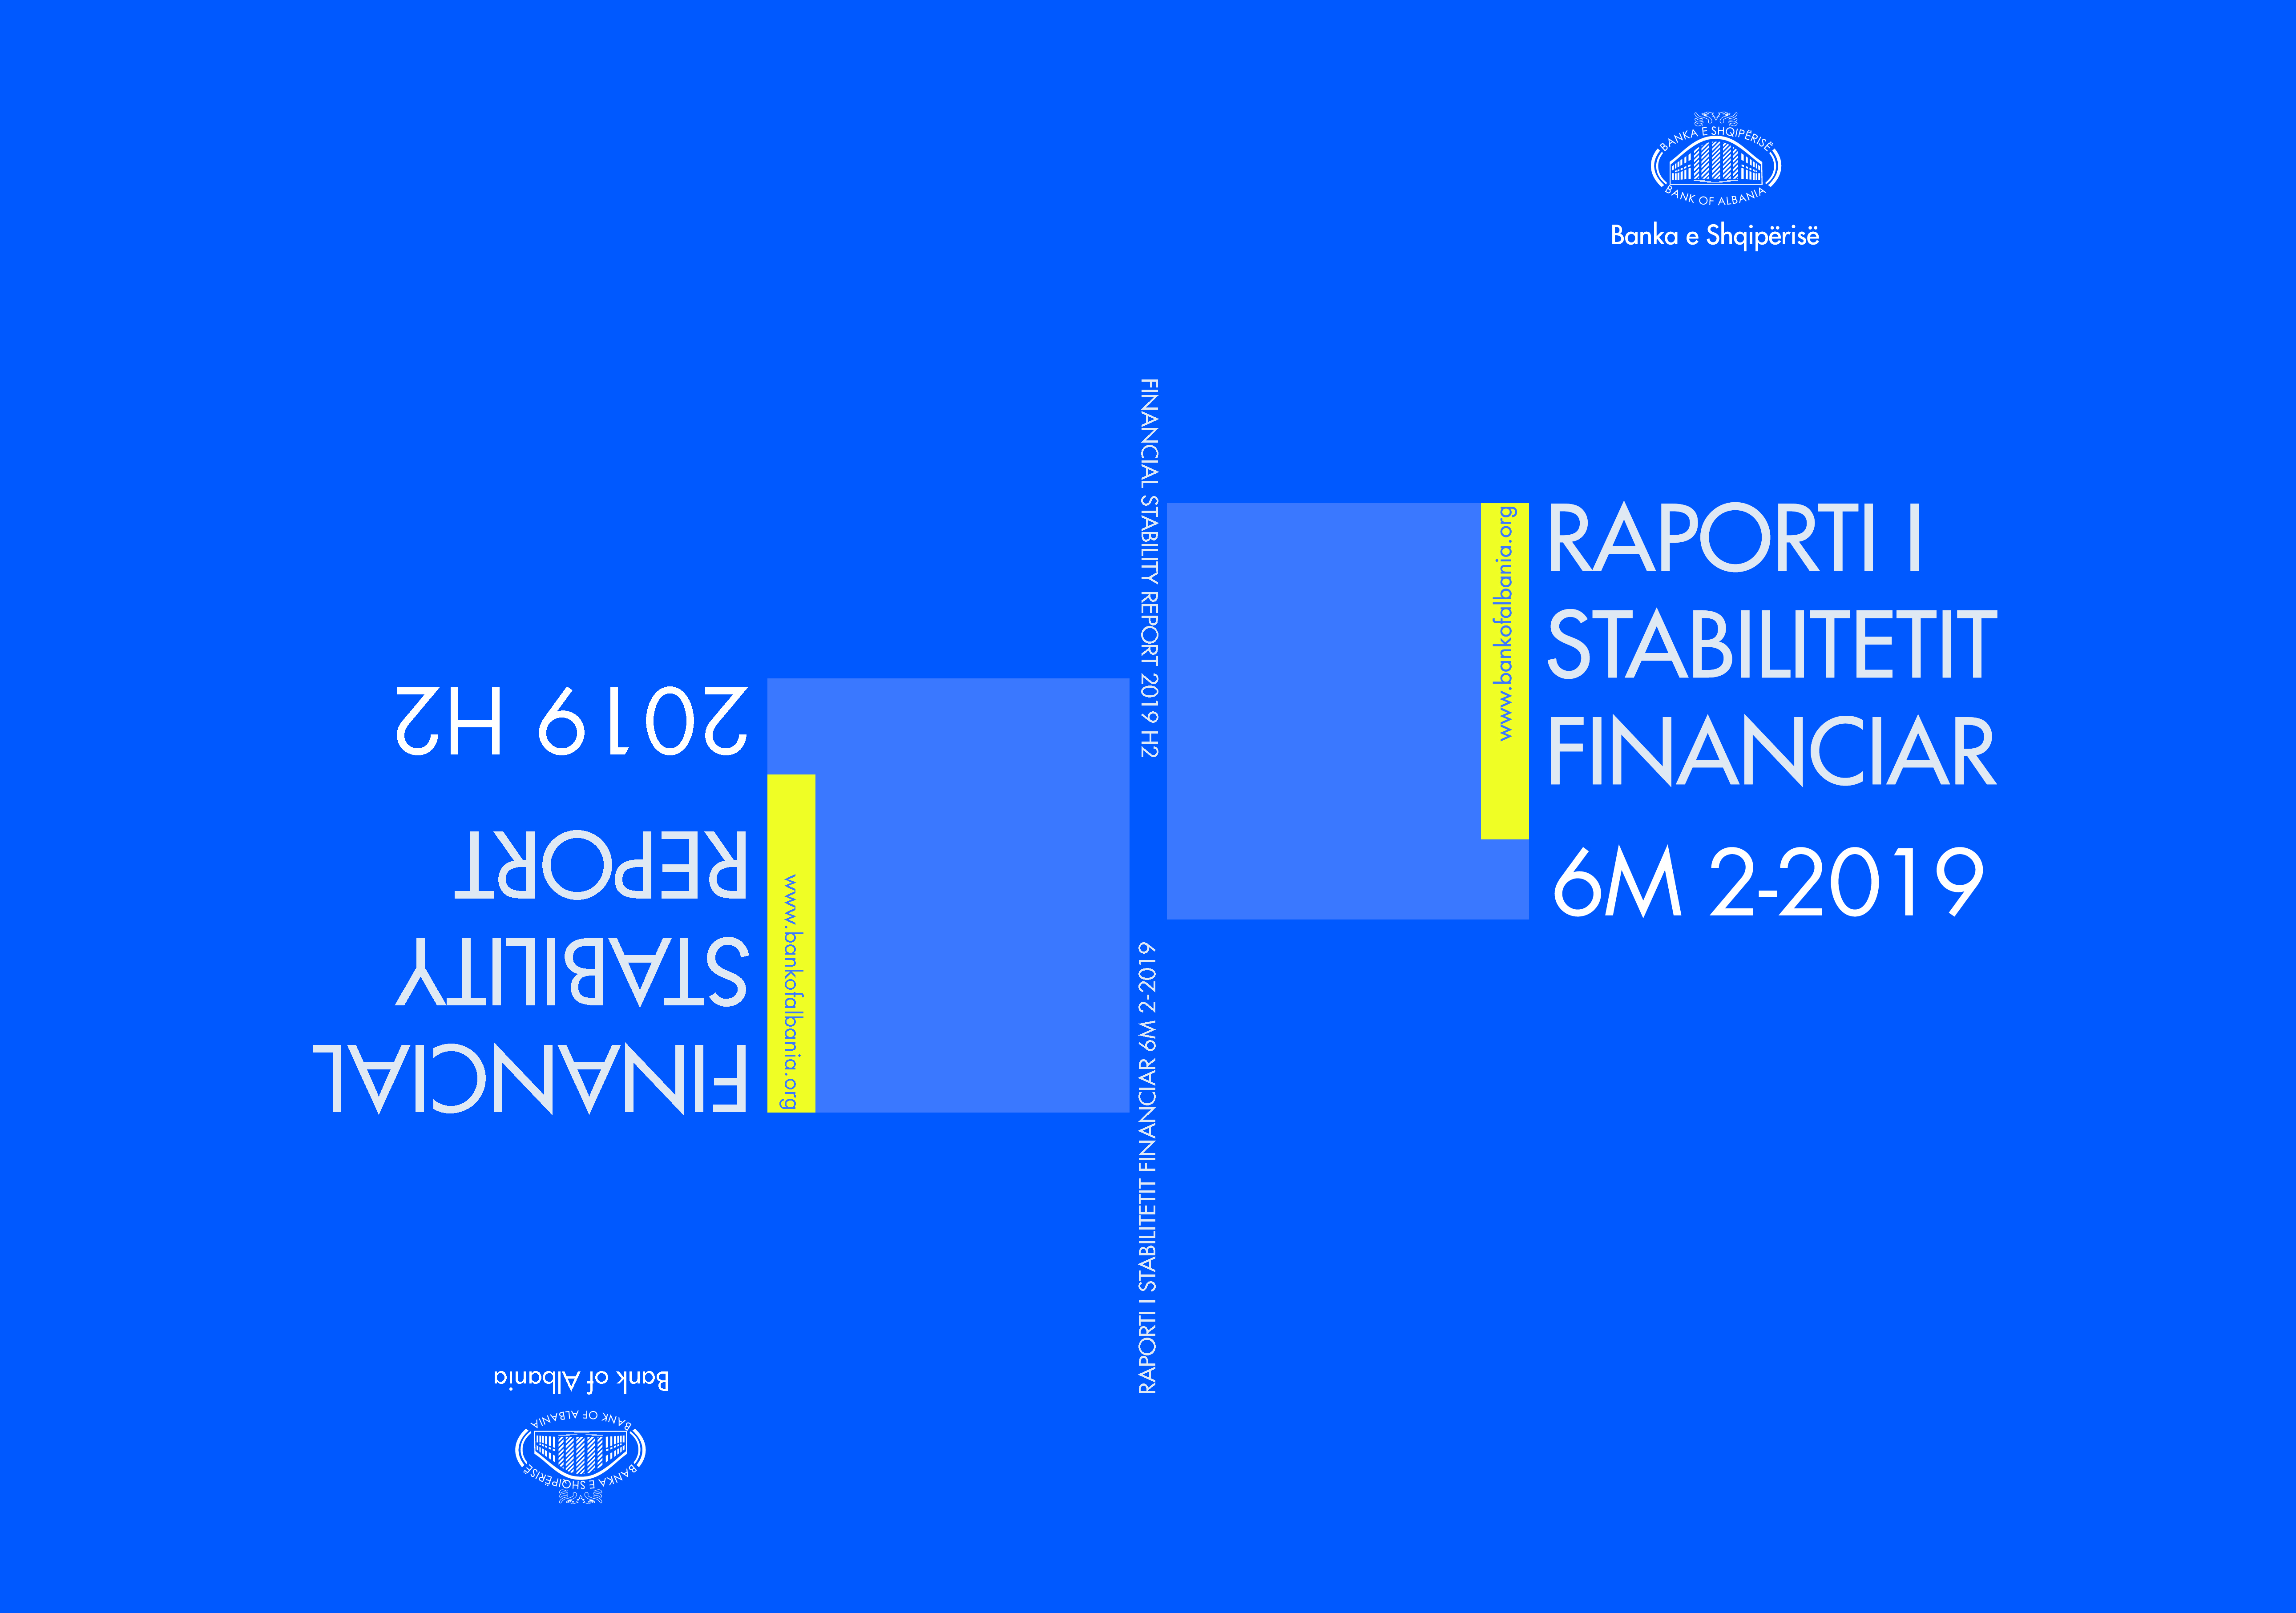 Raporti i Stabilitetit Financiar për gjashtëmujorin e dytë të vitit 2019